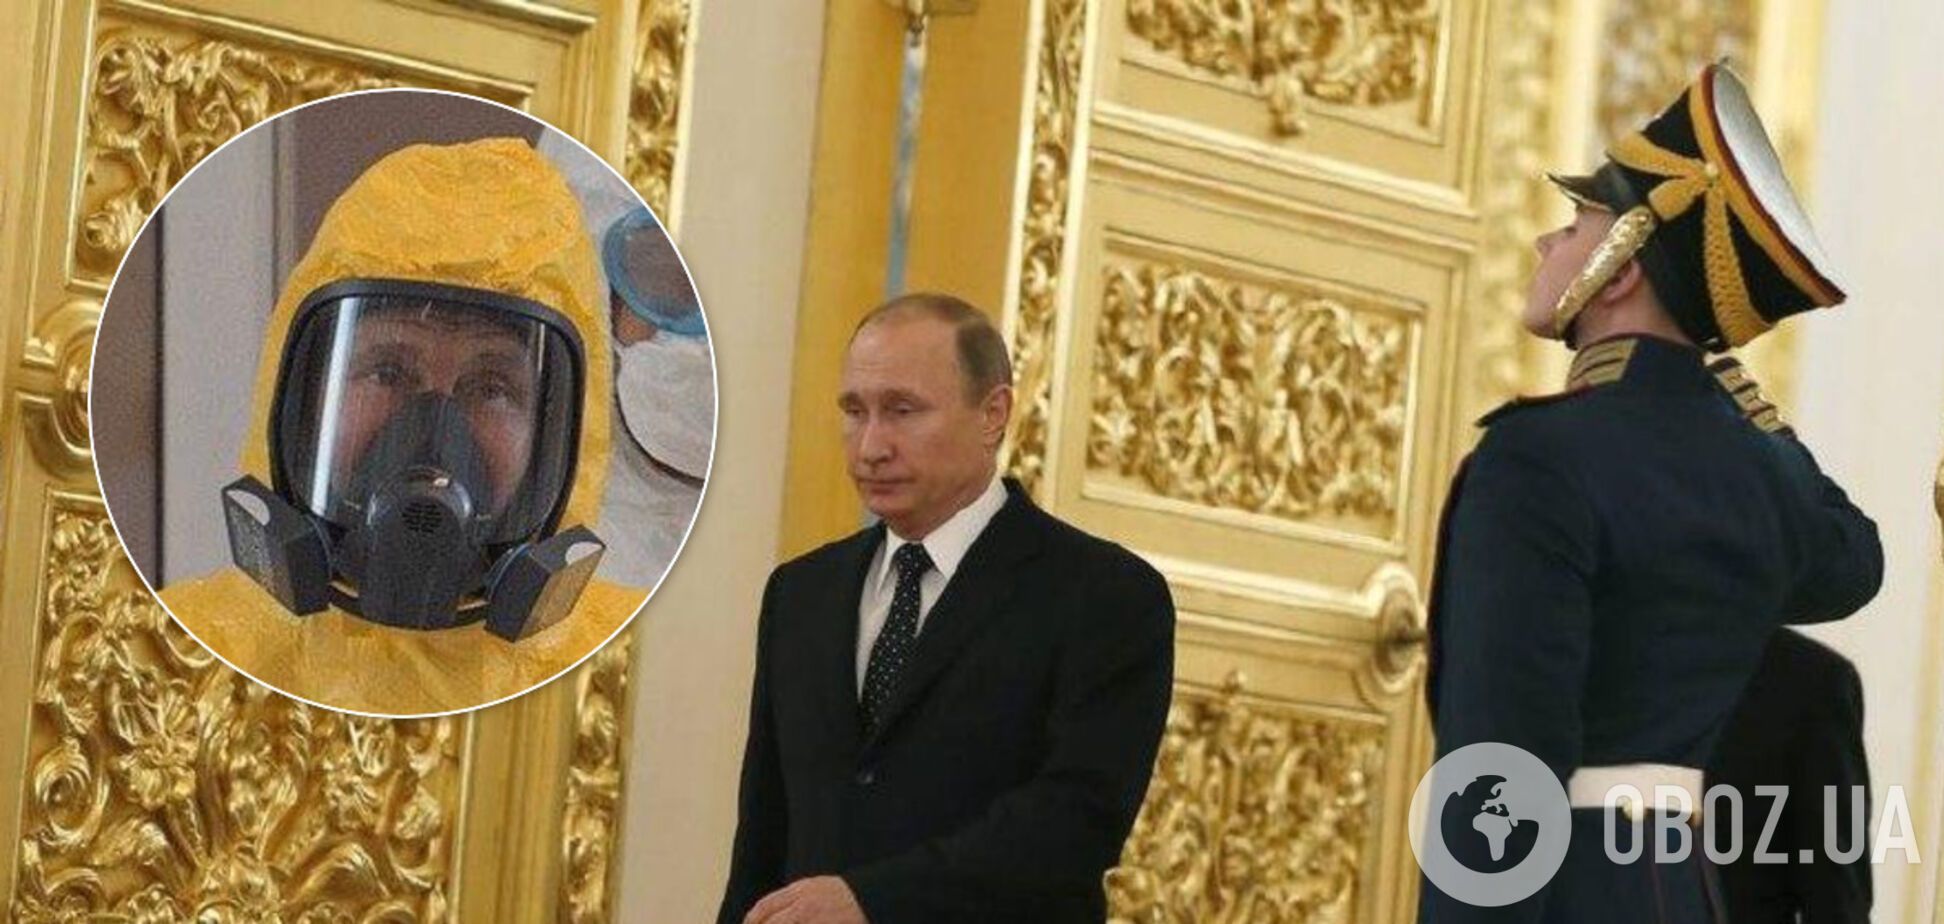 Путін 20 років у владі в Росії: в мережі показали два знакові фото